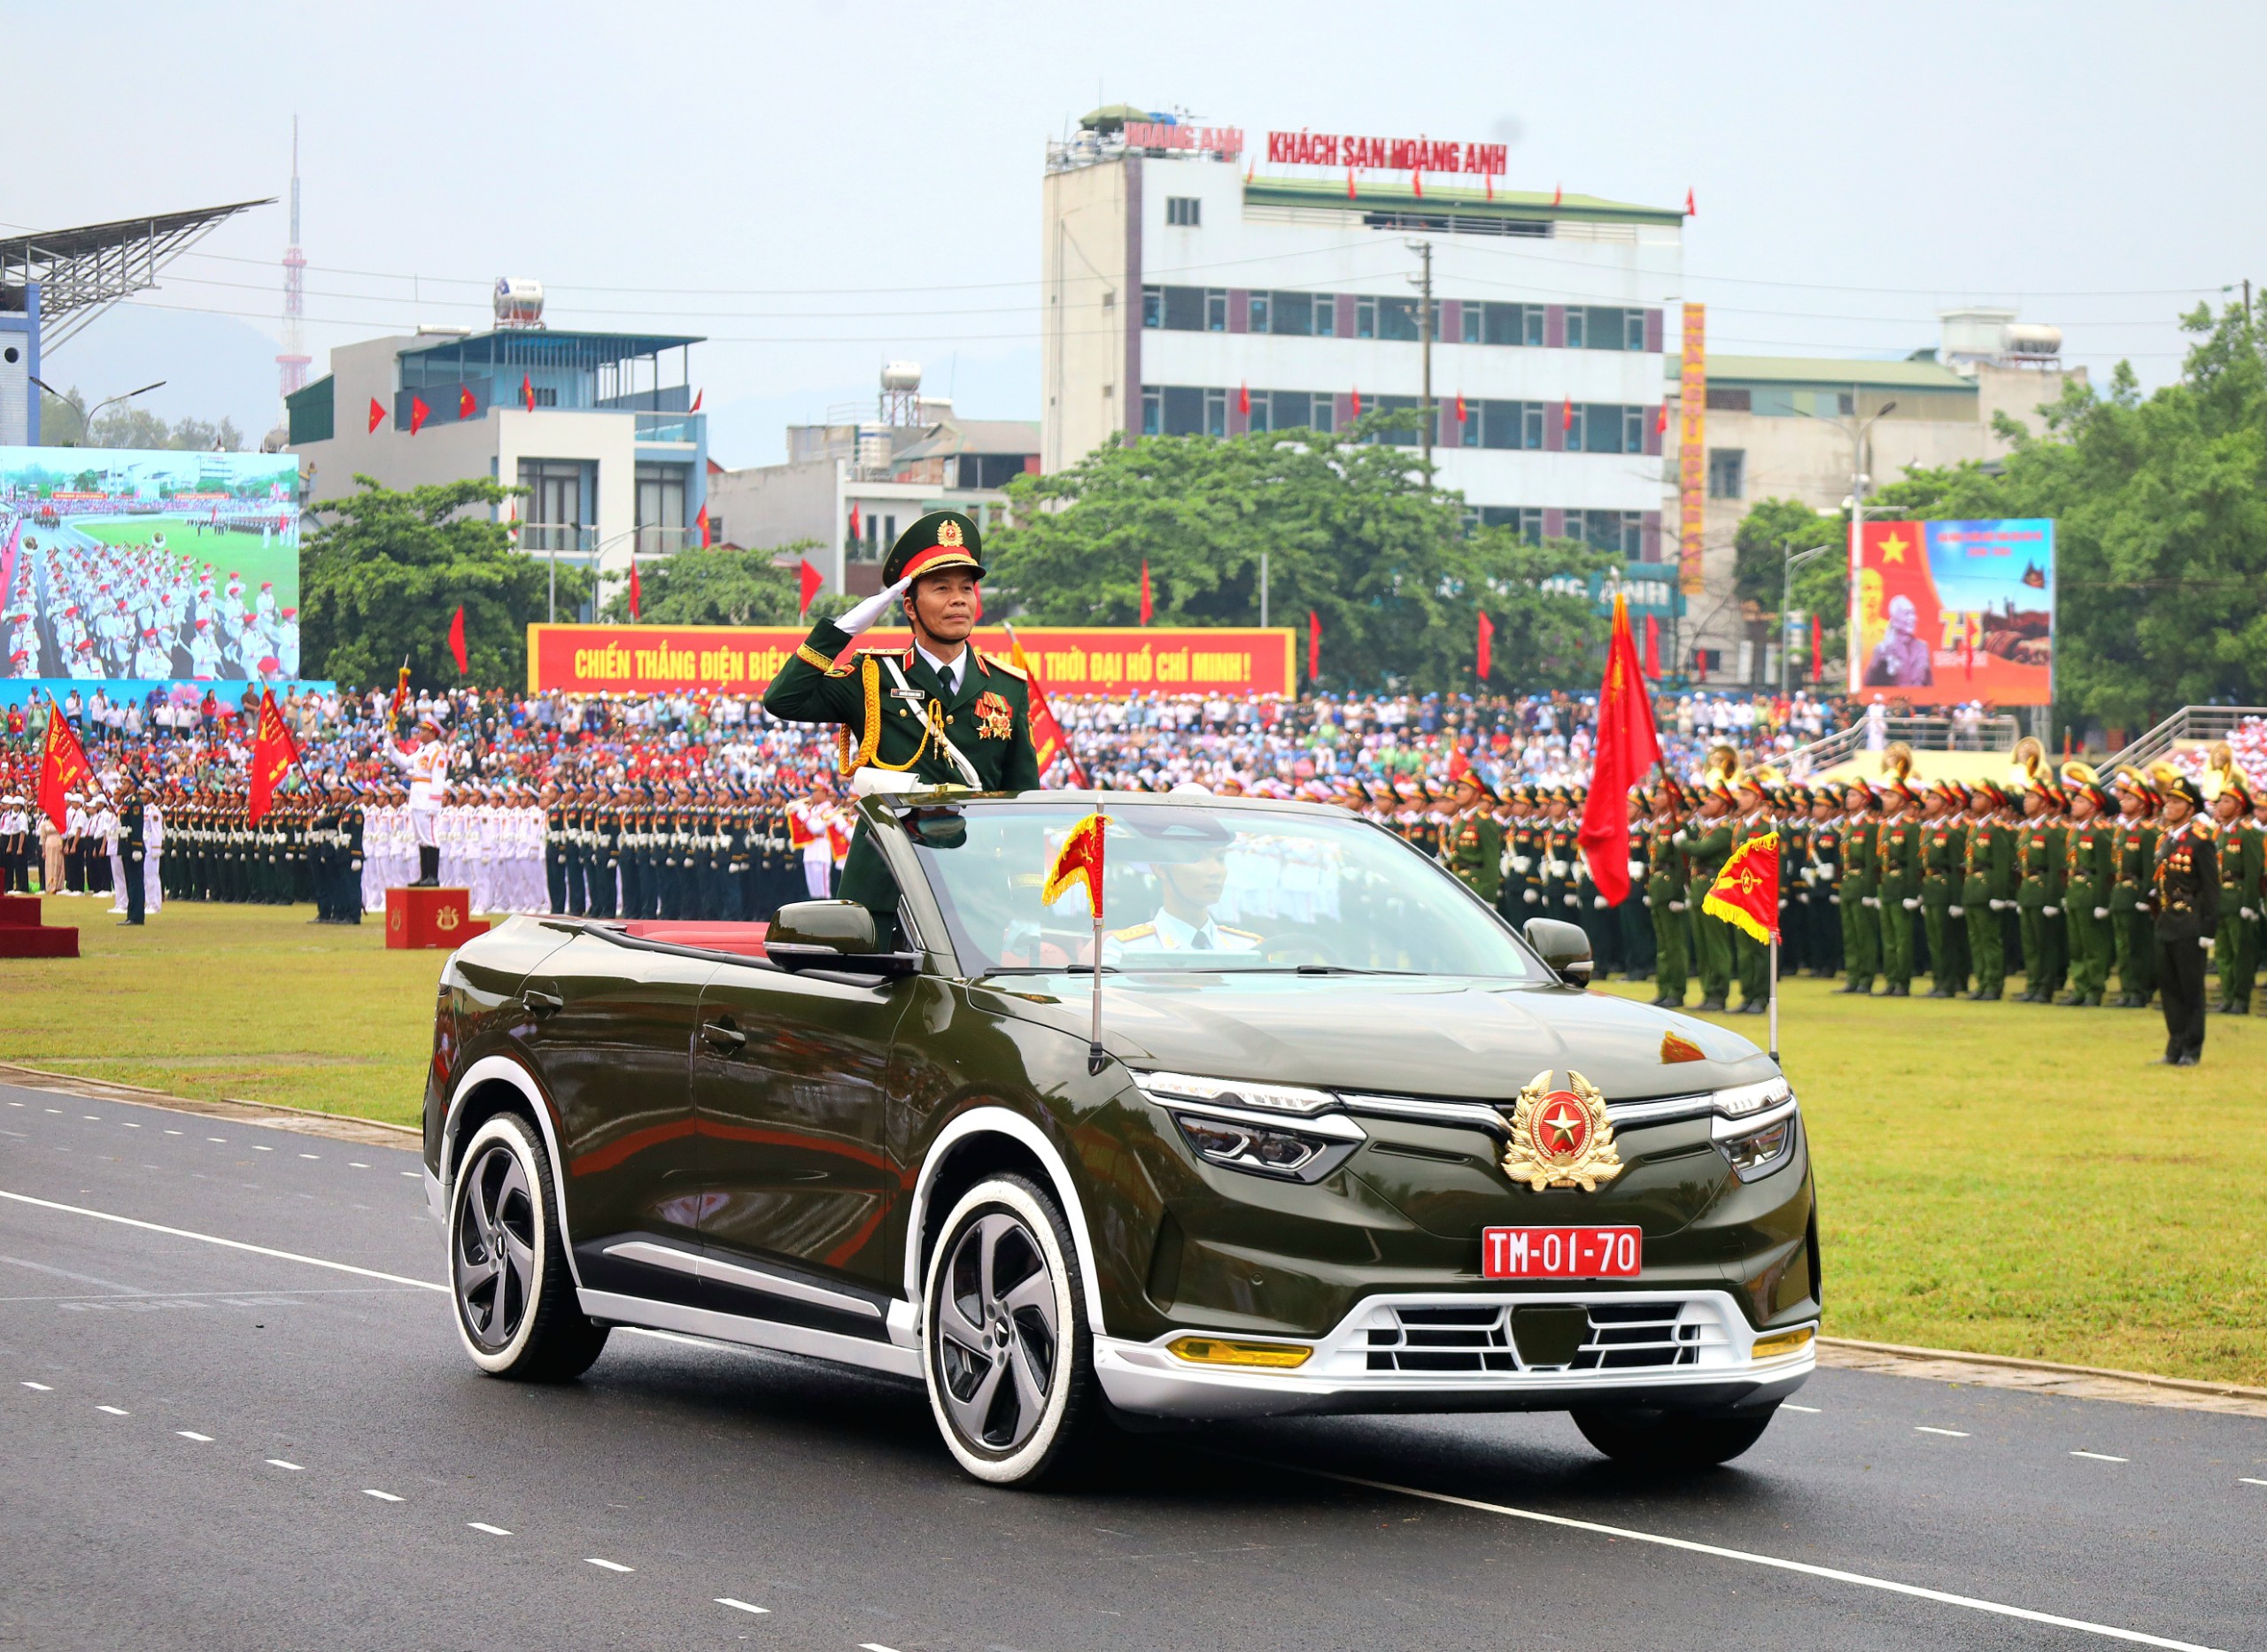 Trung tướng Nguyễn Trọng Bình - Phó Tổng Tham mưu trưởng Quân đội nhân dân Việt Nam trên xe chỉ huy dẫn đầu đoàn diễu binh, diễu hành.